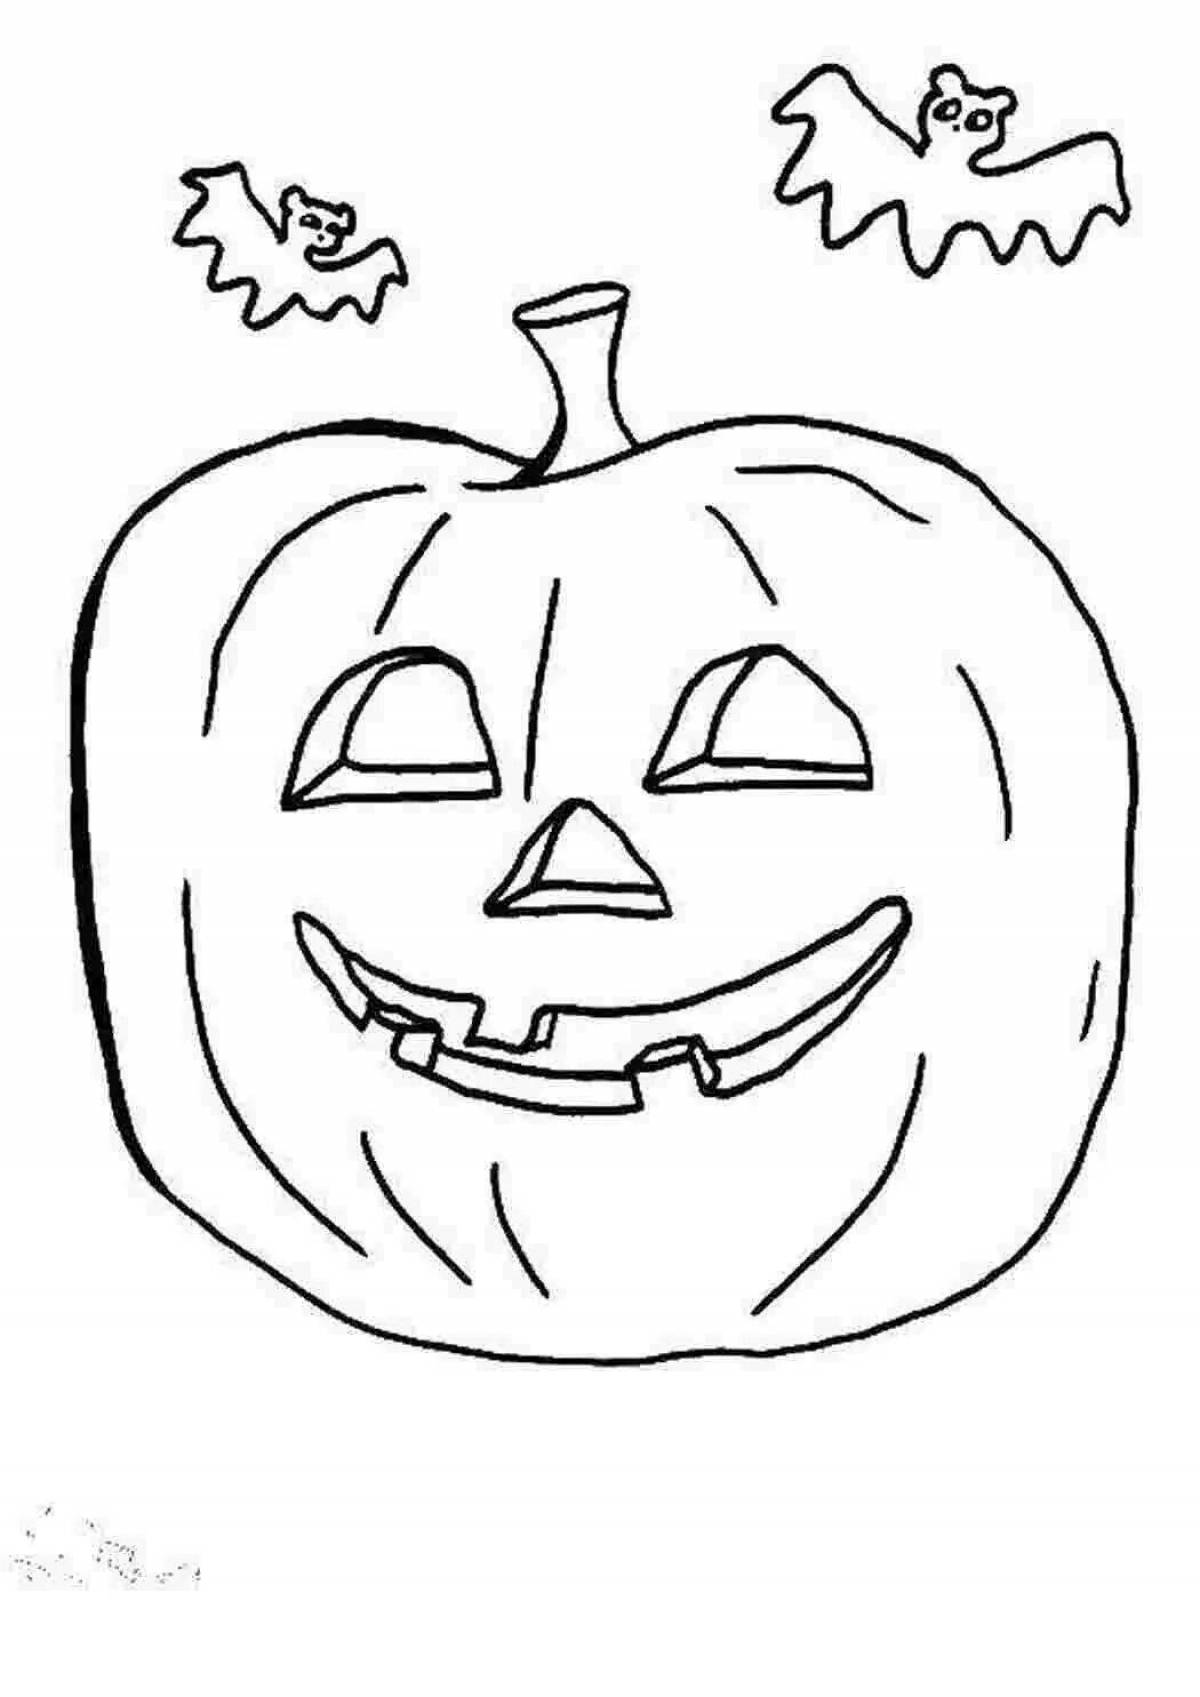 Grotesque halloween pumpkin coloring book